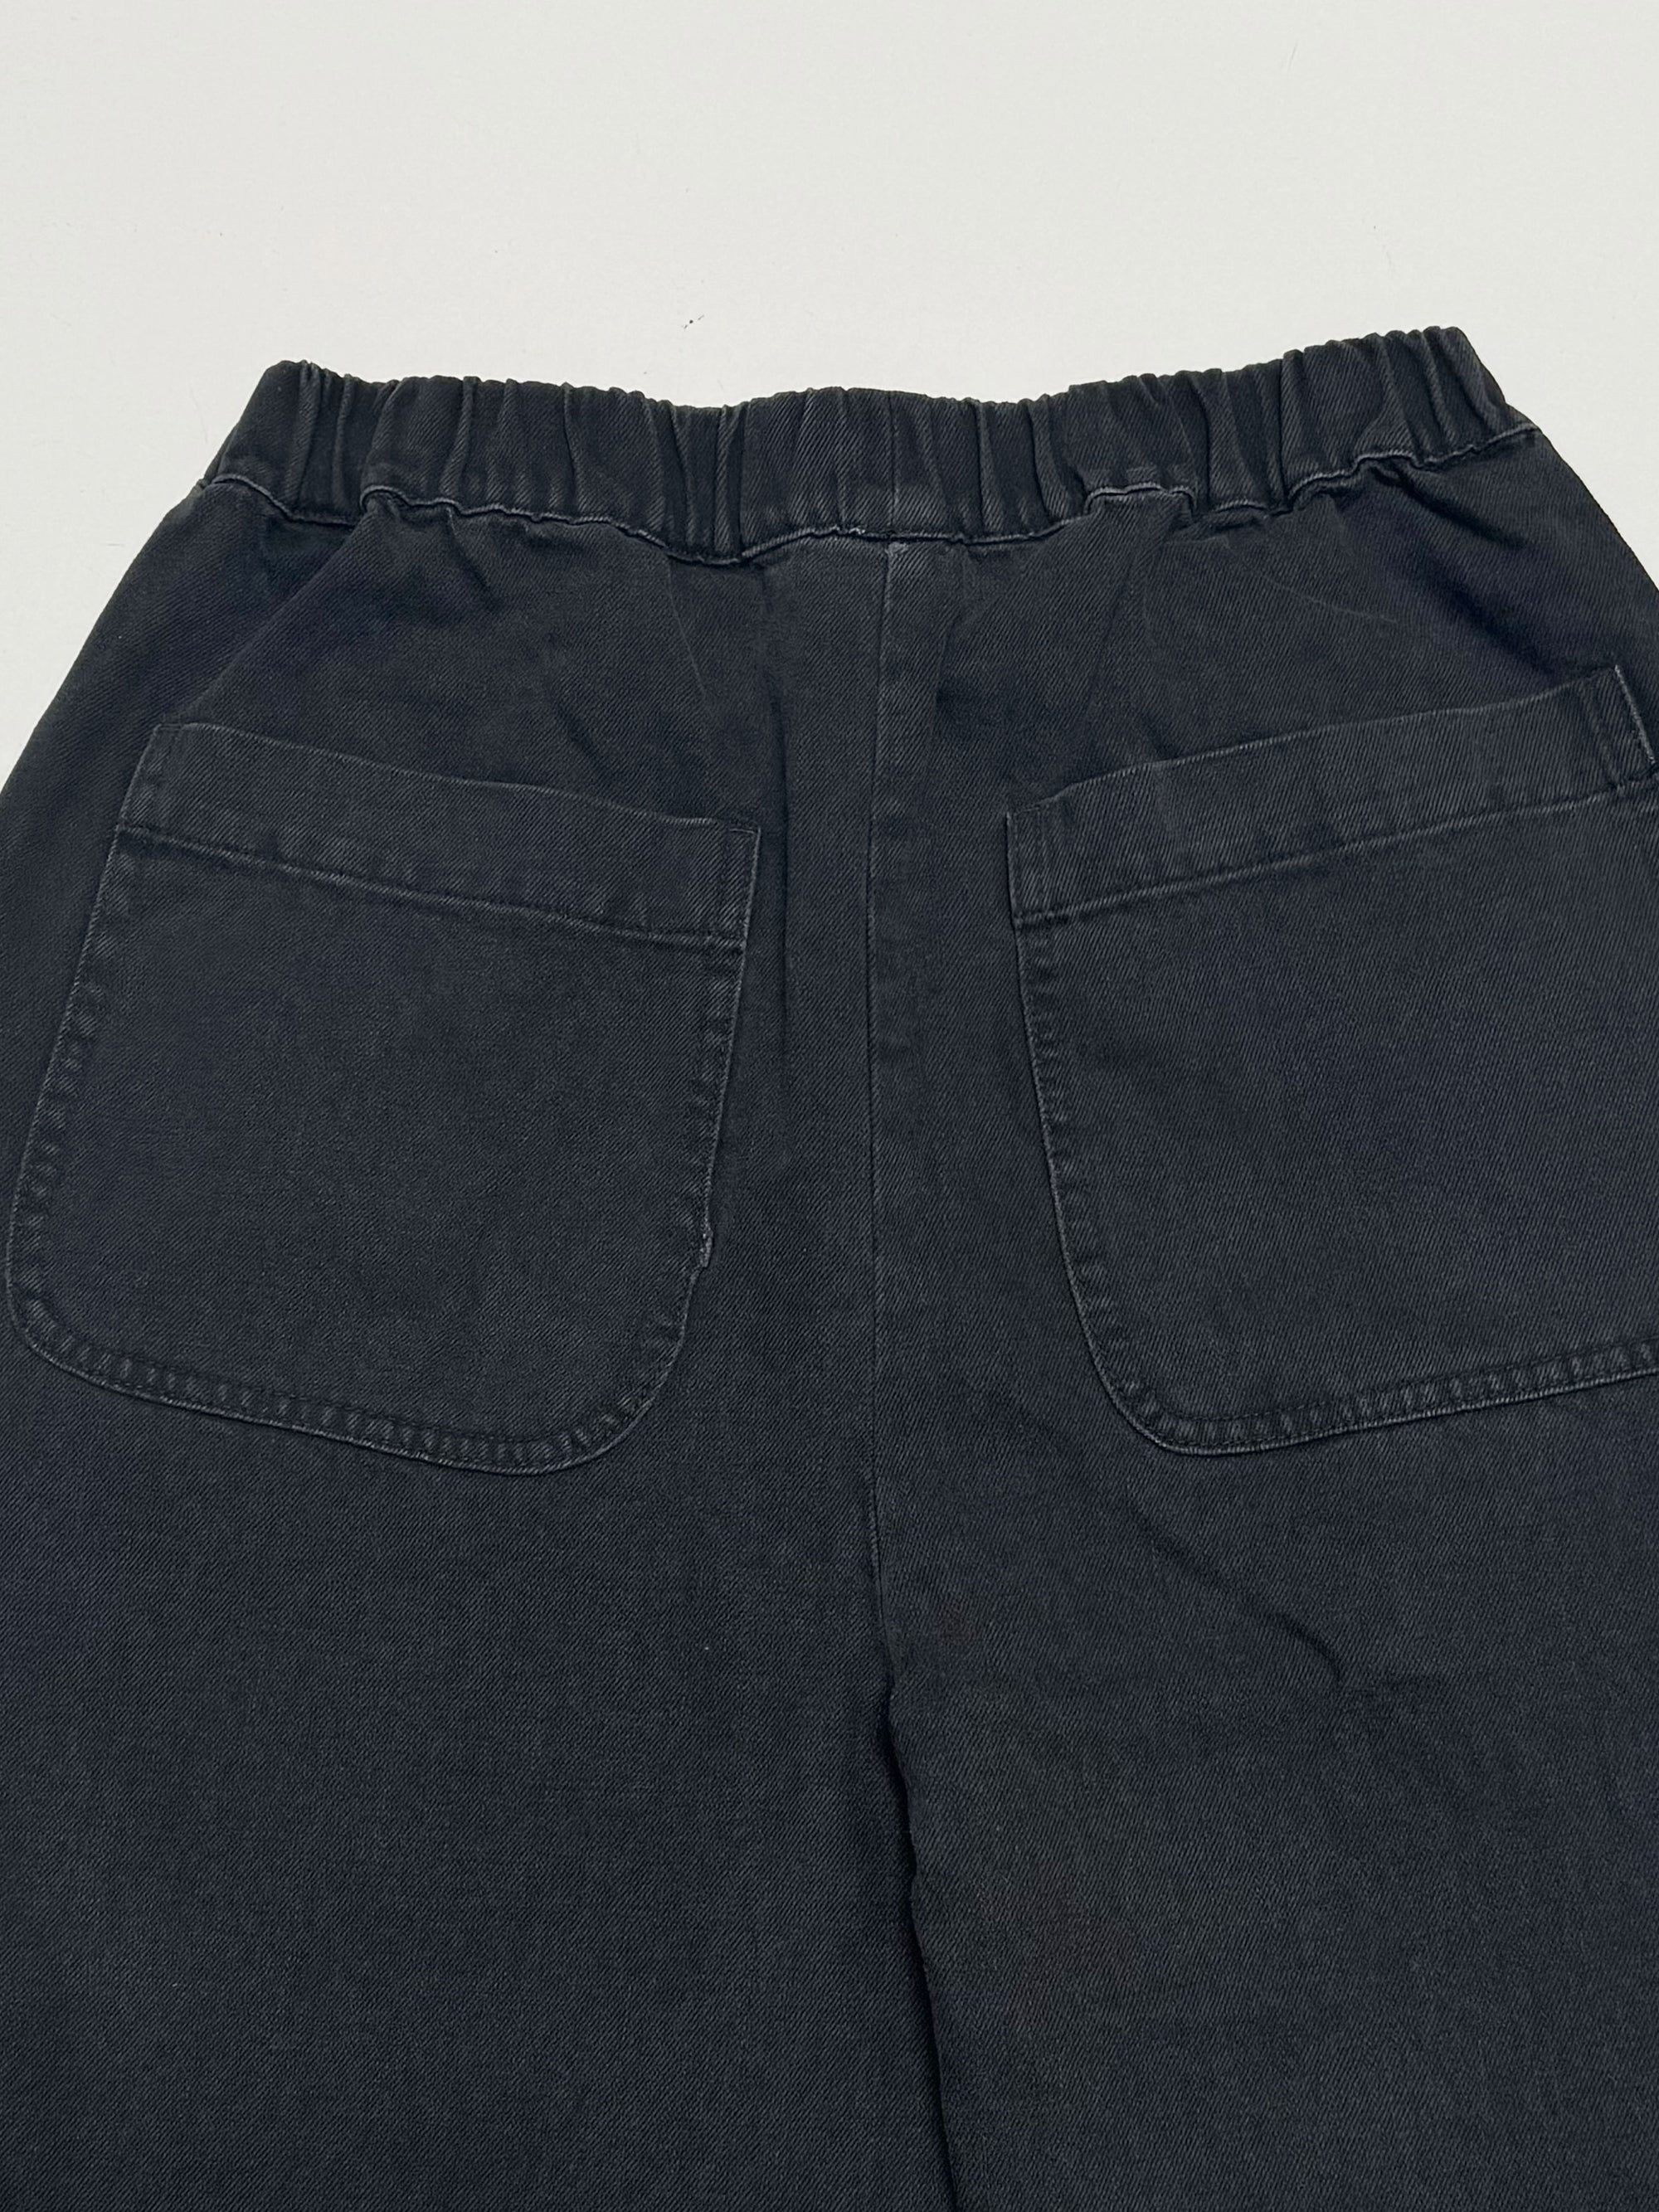 Medium Faded Black Barrel Pant - Second Quality